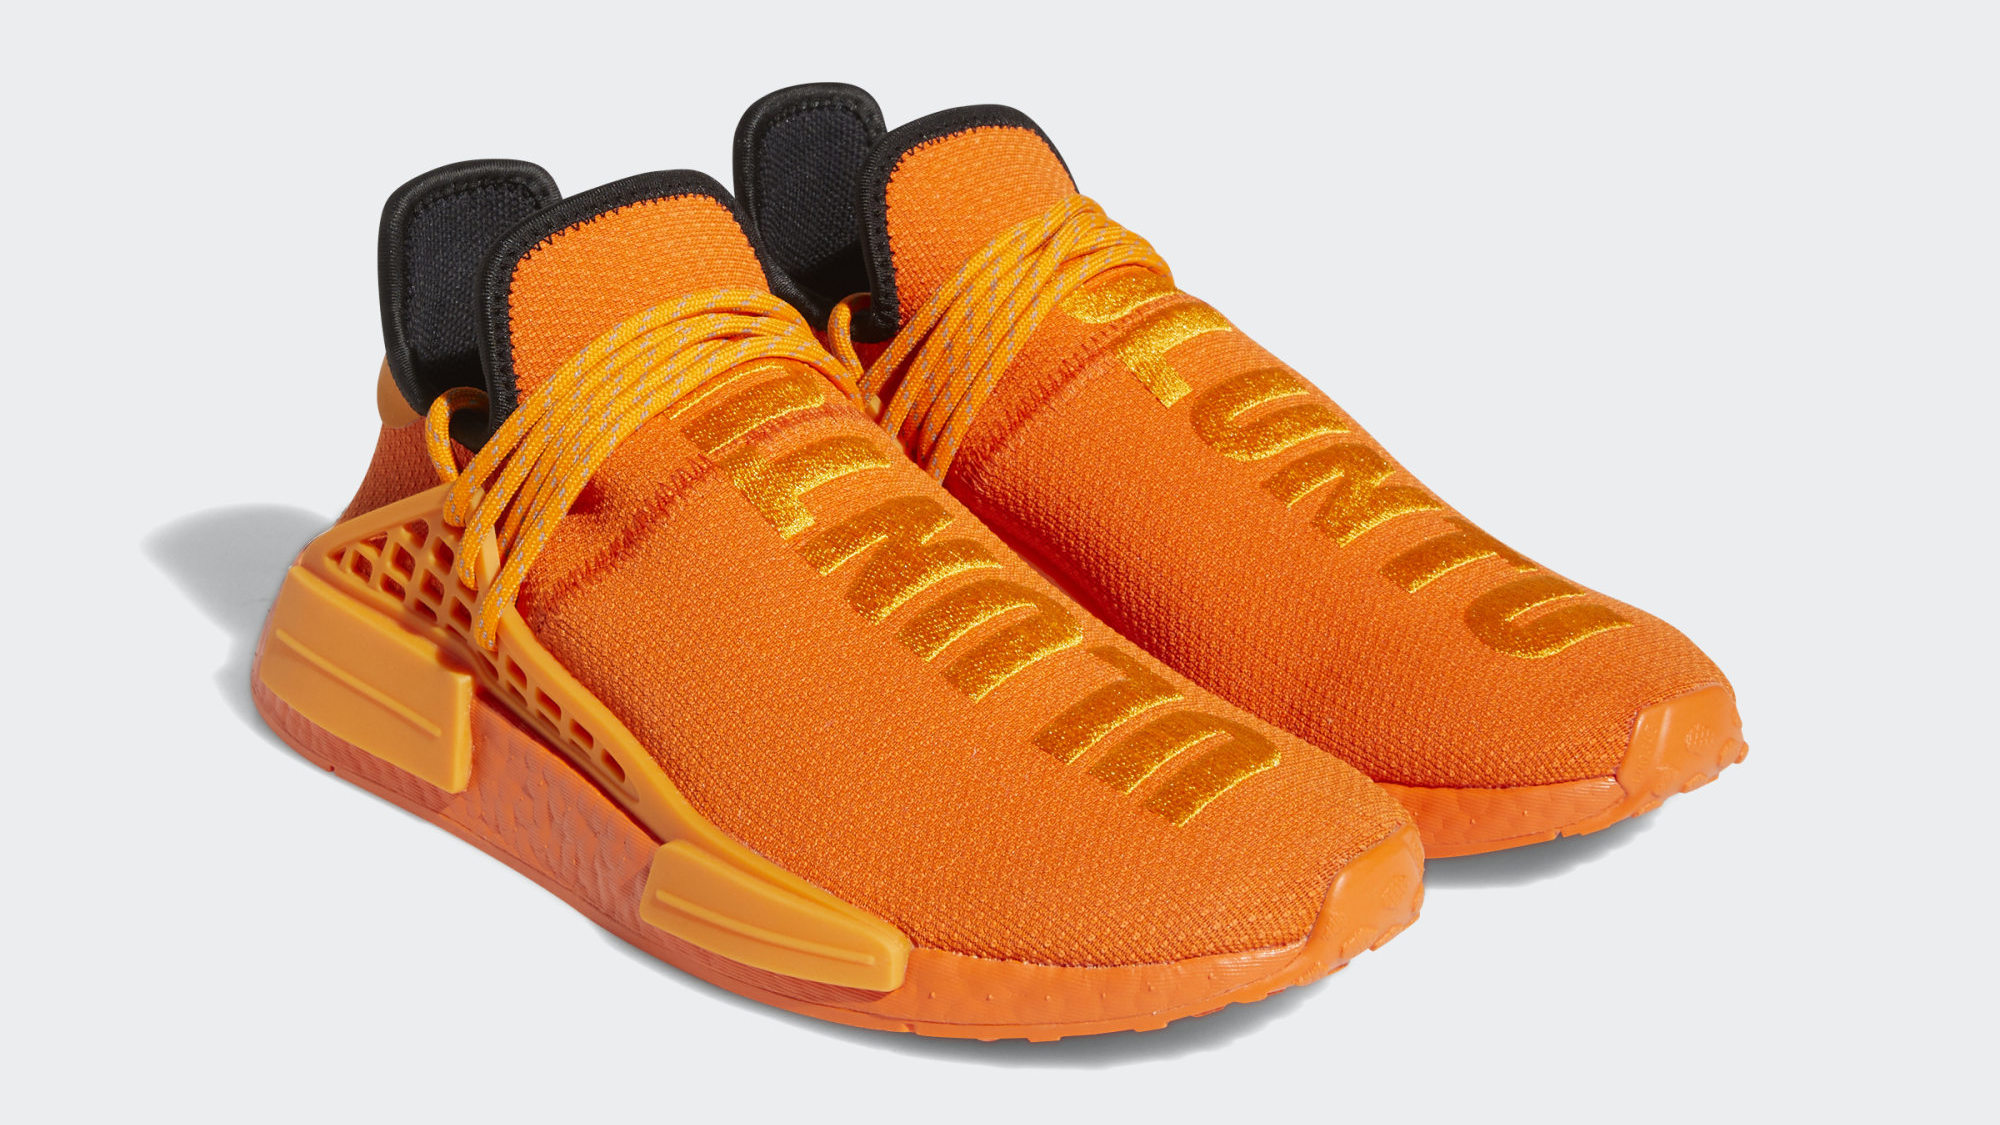 Uitdrukking samenwerken 鍔 Pharrell's Adidas NMD Hu Shoe Is Releasing in Orange | Complex